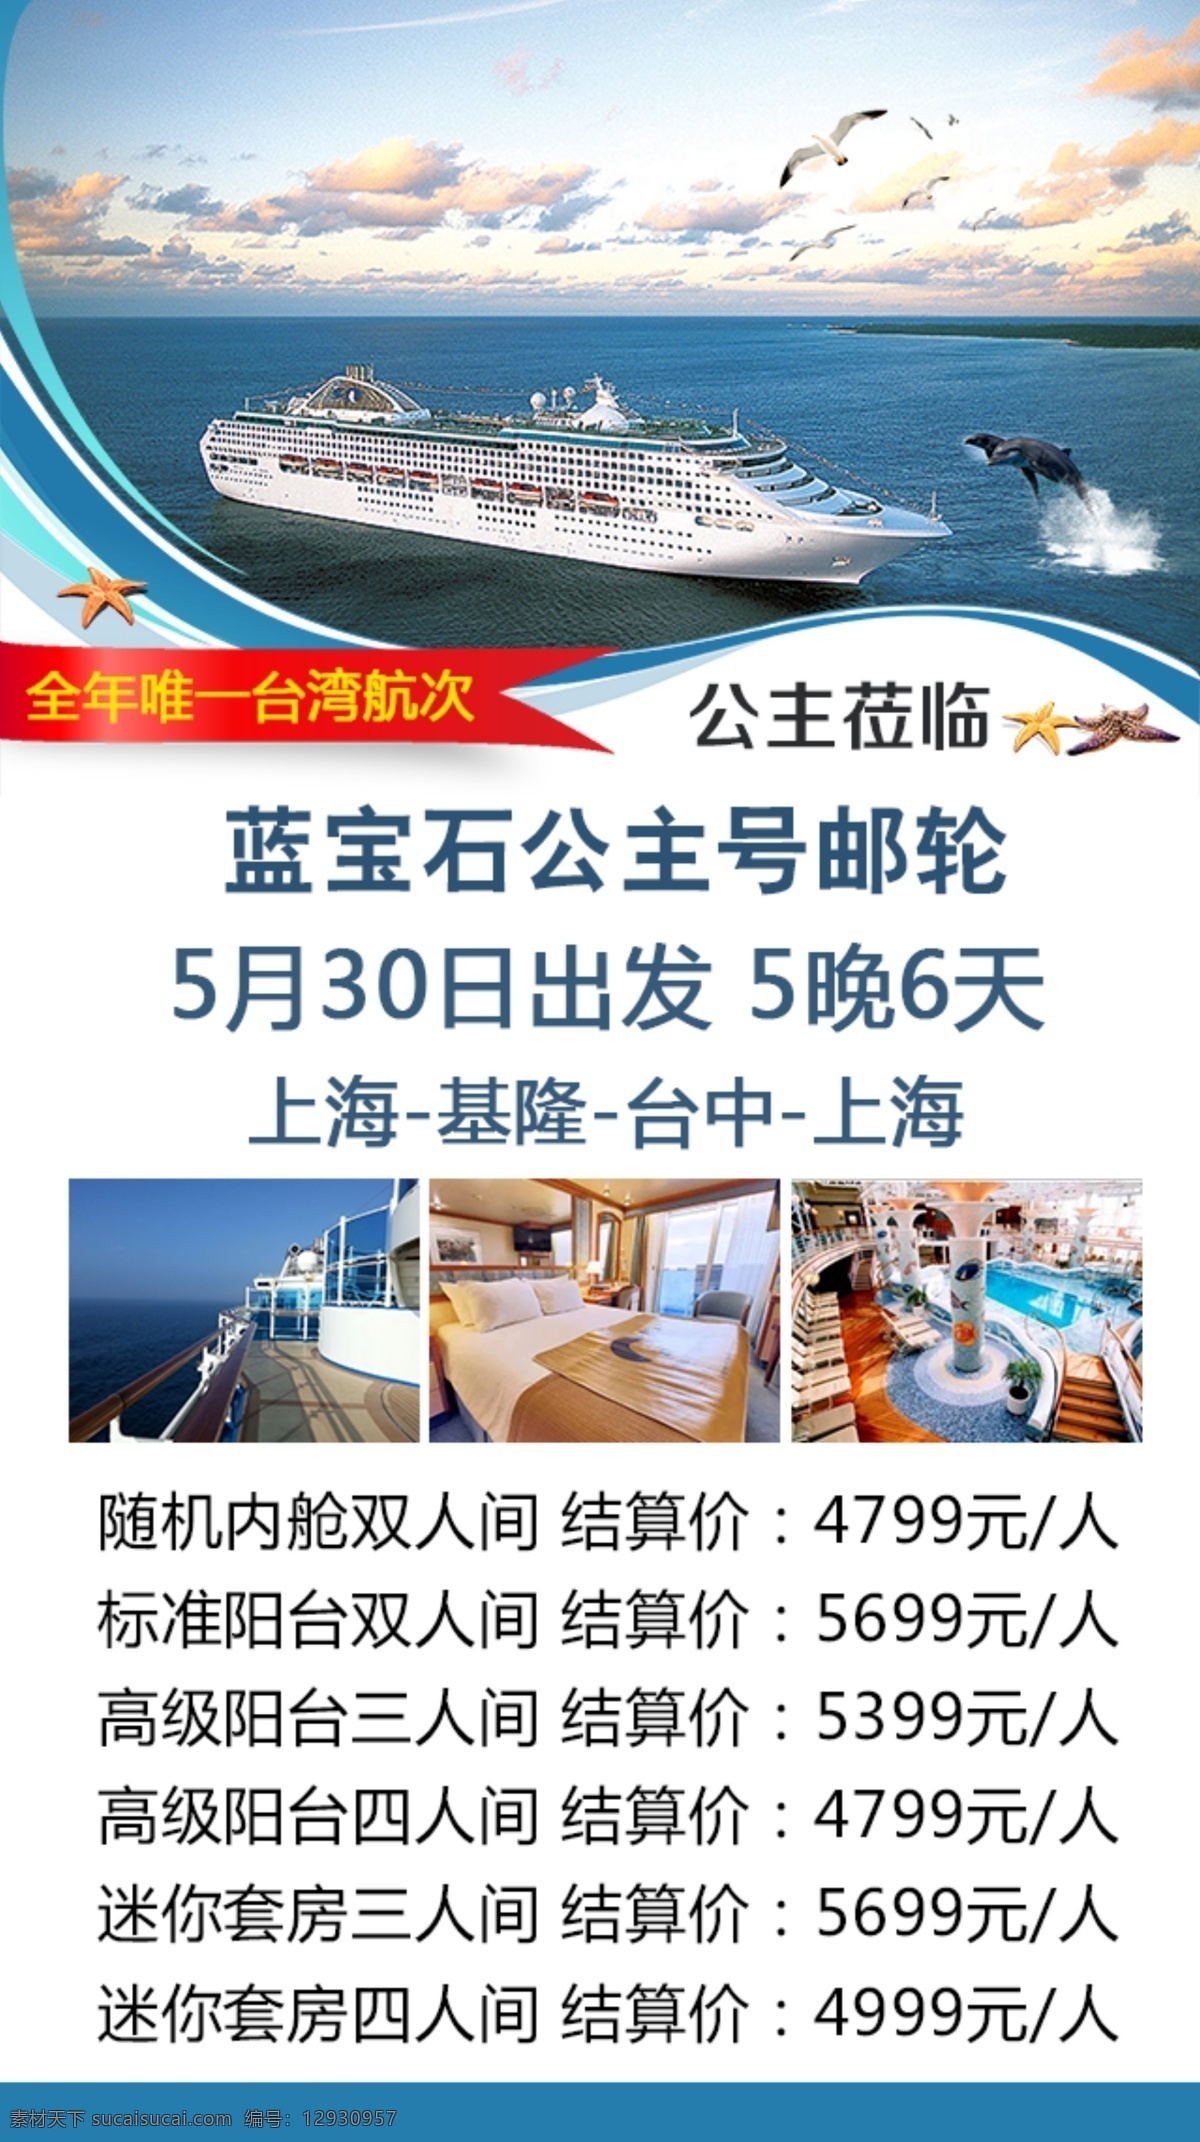 公主邮轮 蓝宝石公主号 台湾航次 上海出发 白色